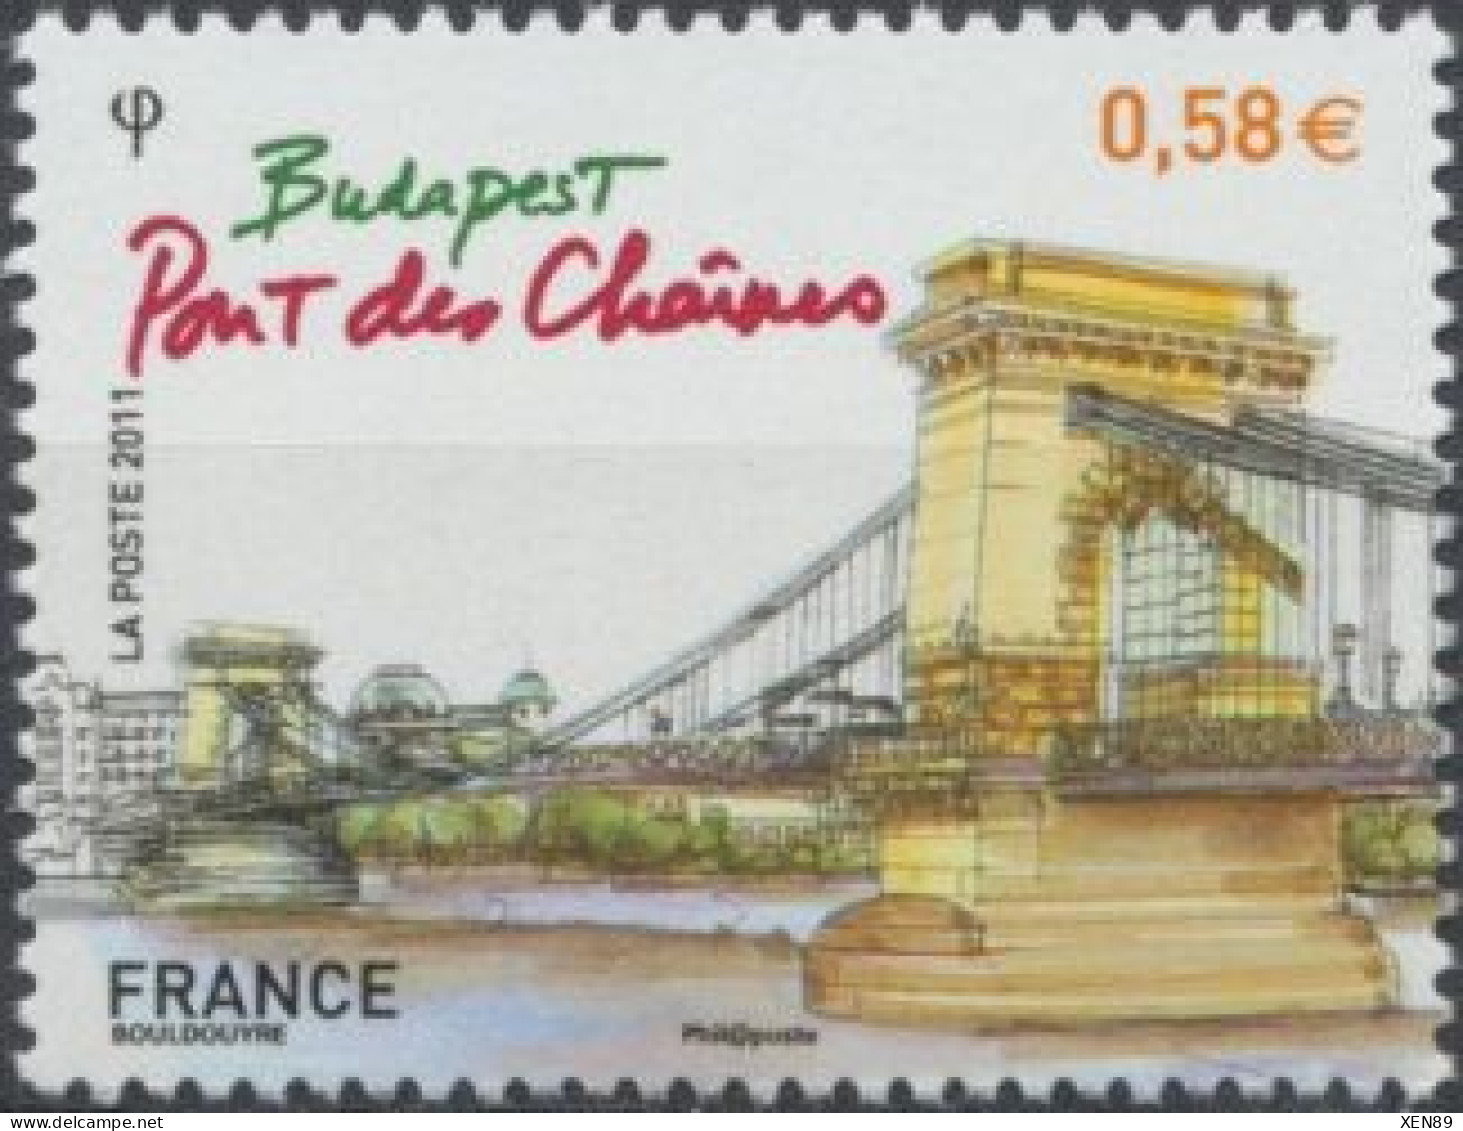 2011 - 4538 - Capitale Européenne - Budapest - Pont Des Chaînes - Ungebraucht